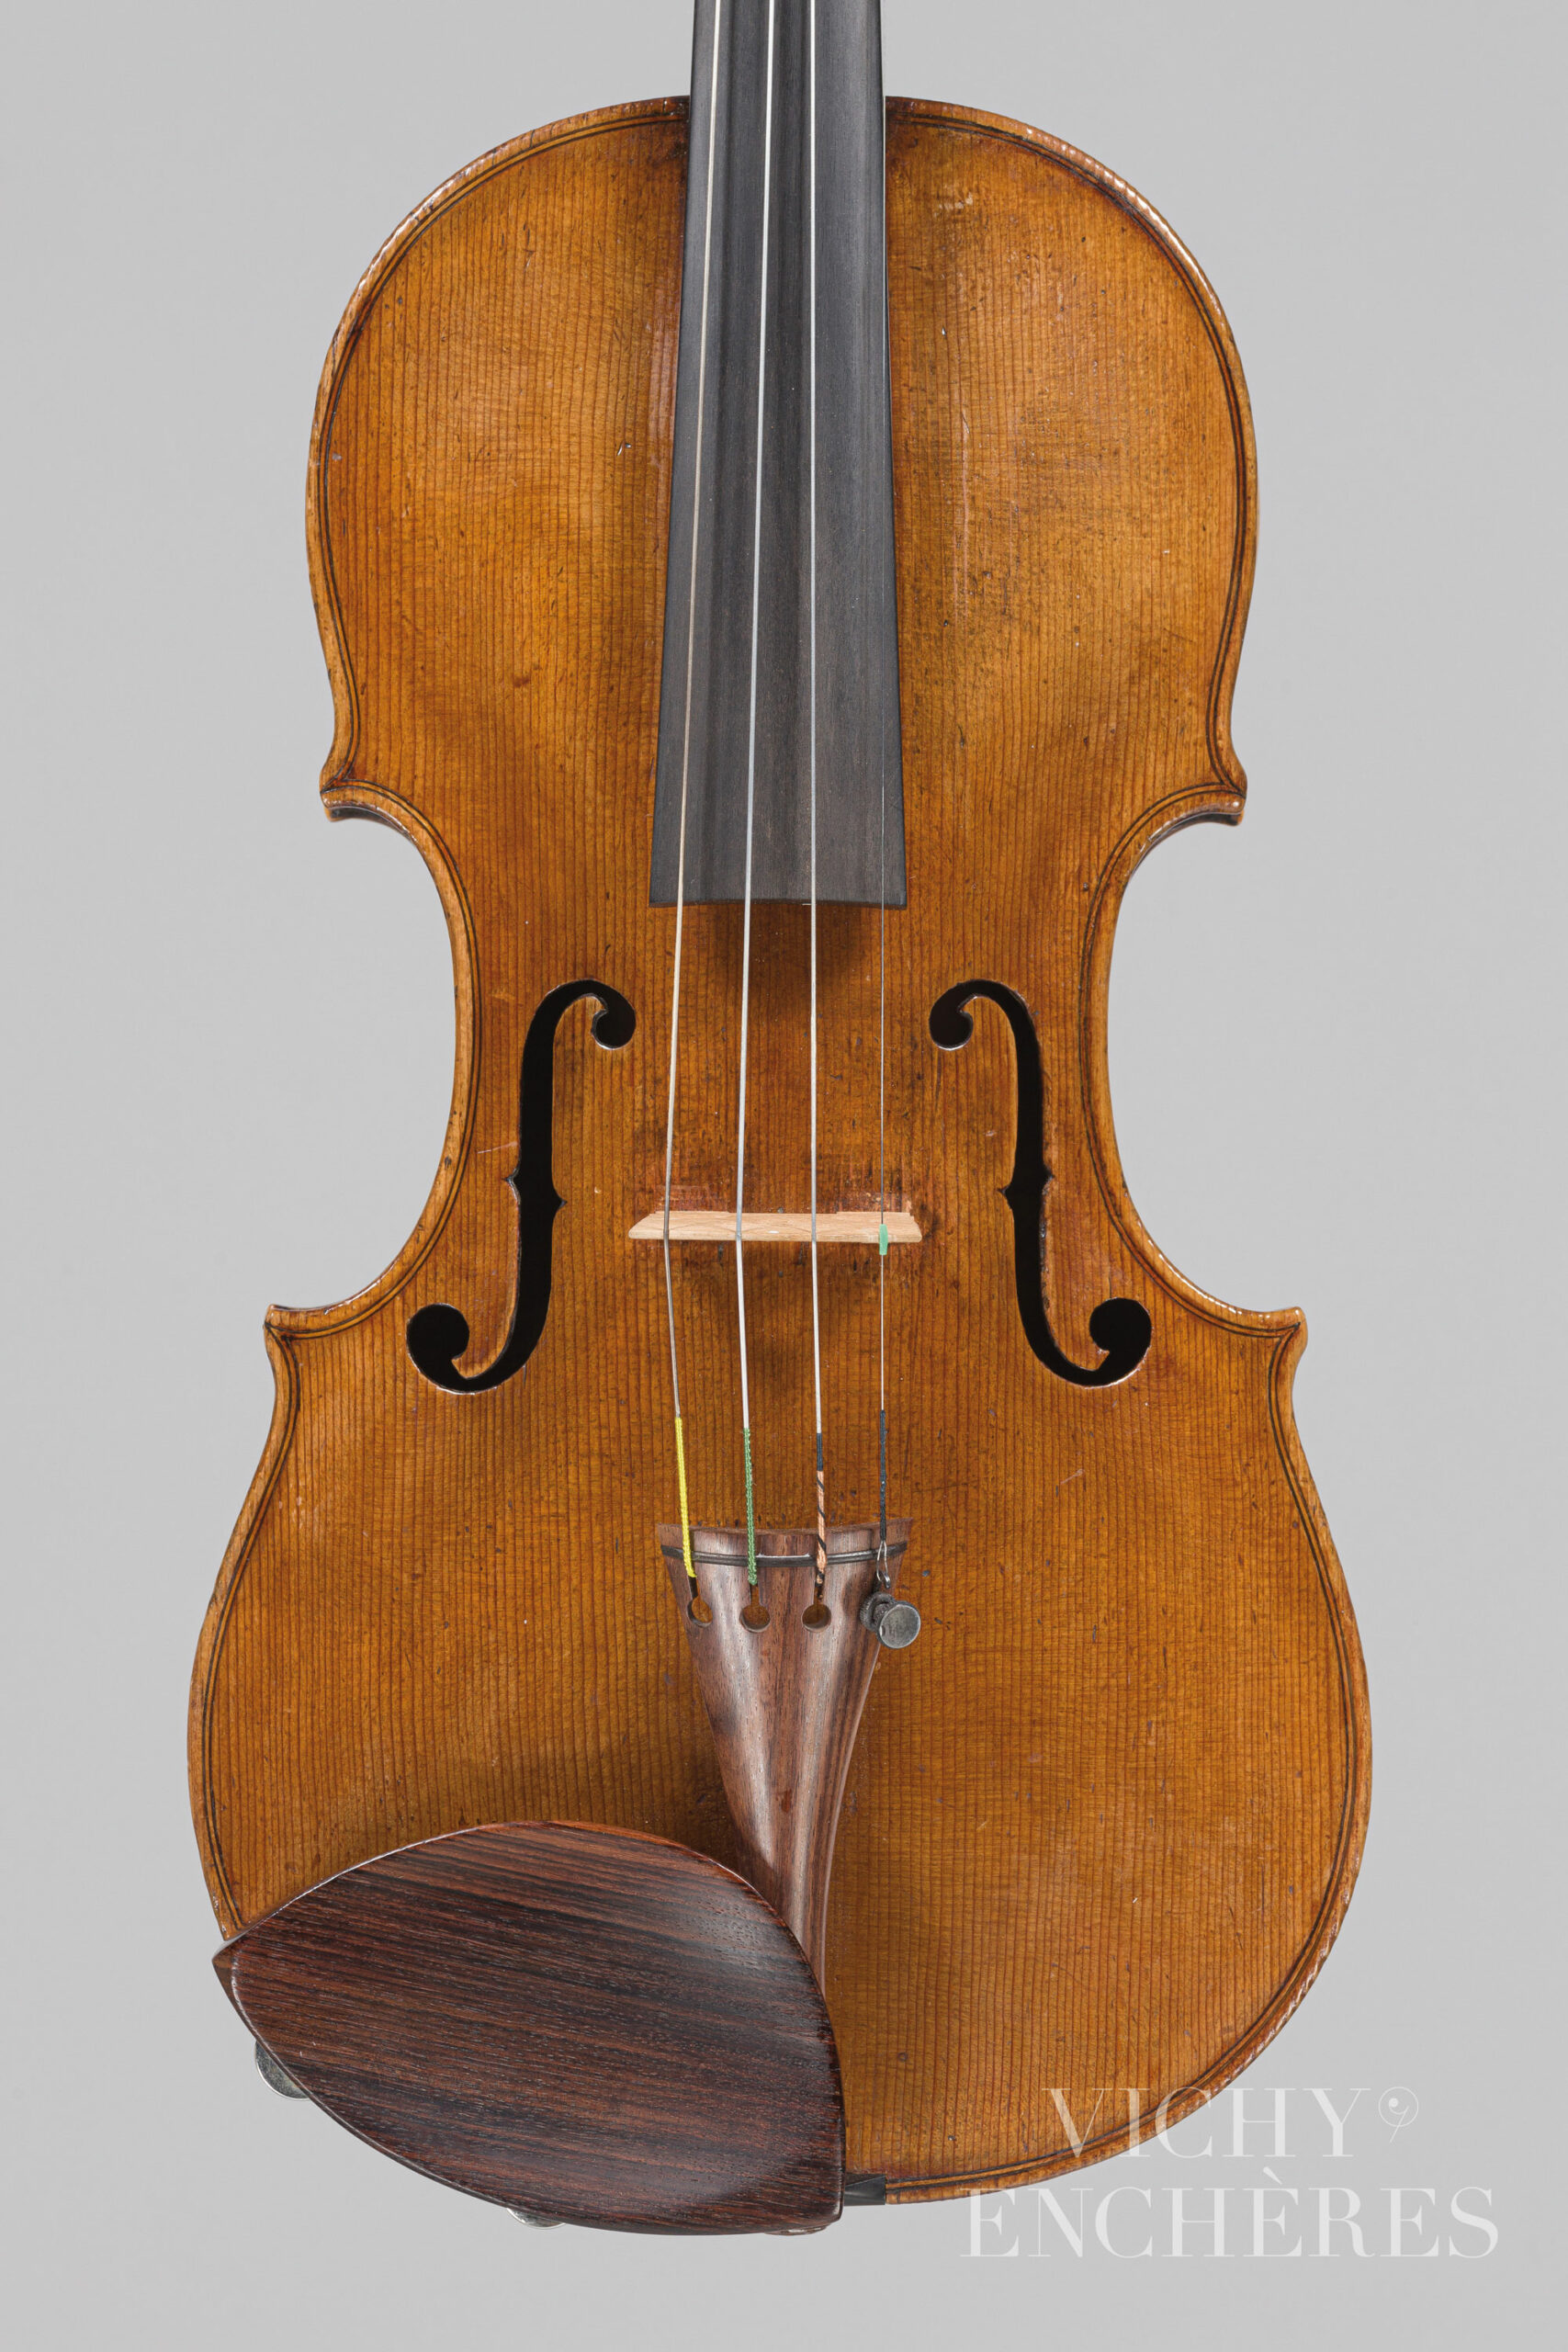 Violon de Giovanni Baptista GABRIELLI Instrument mis en vente par Vichy Enchères le 1er décembre 2022 © Christophe Darbelet